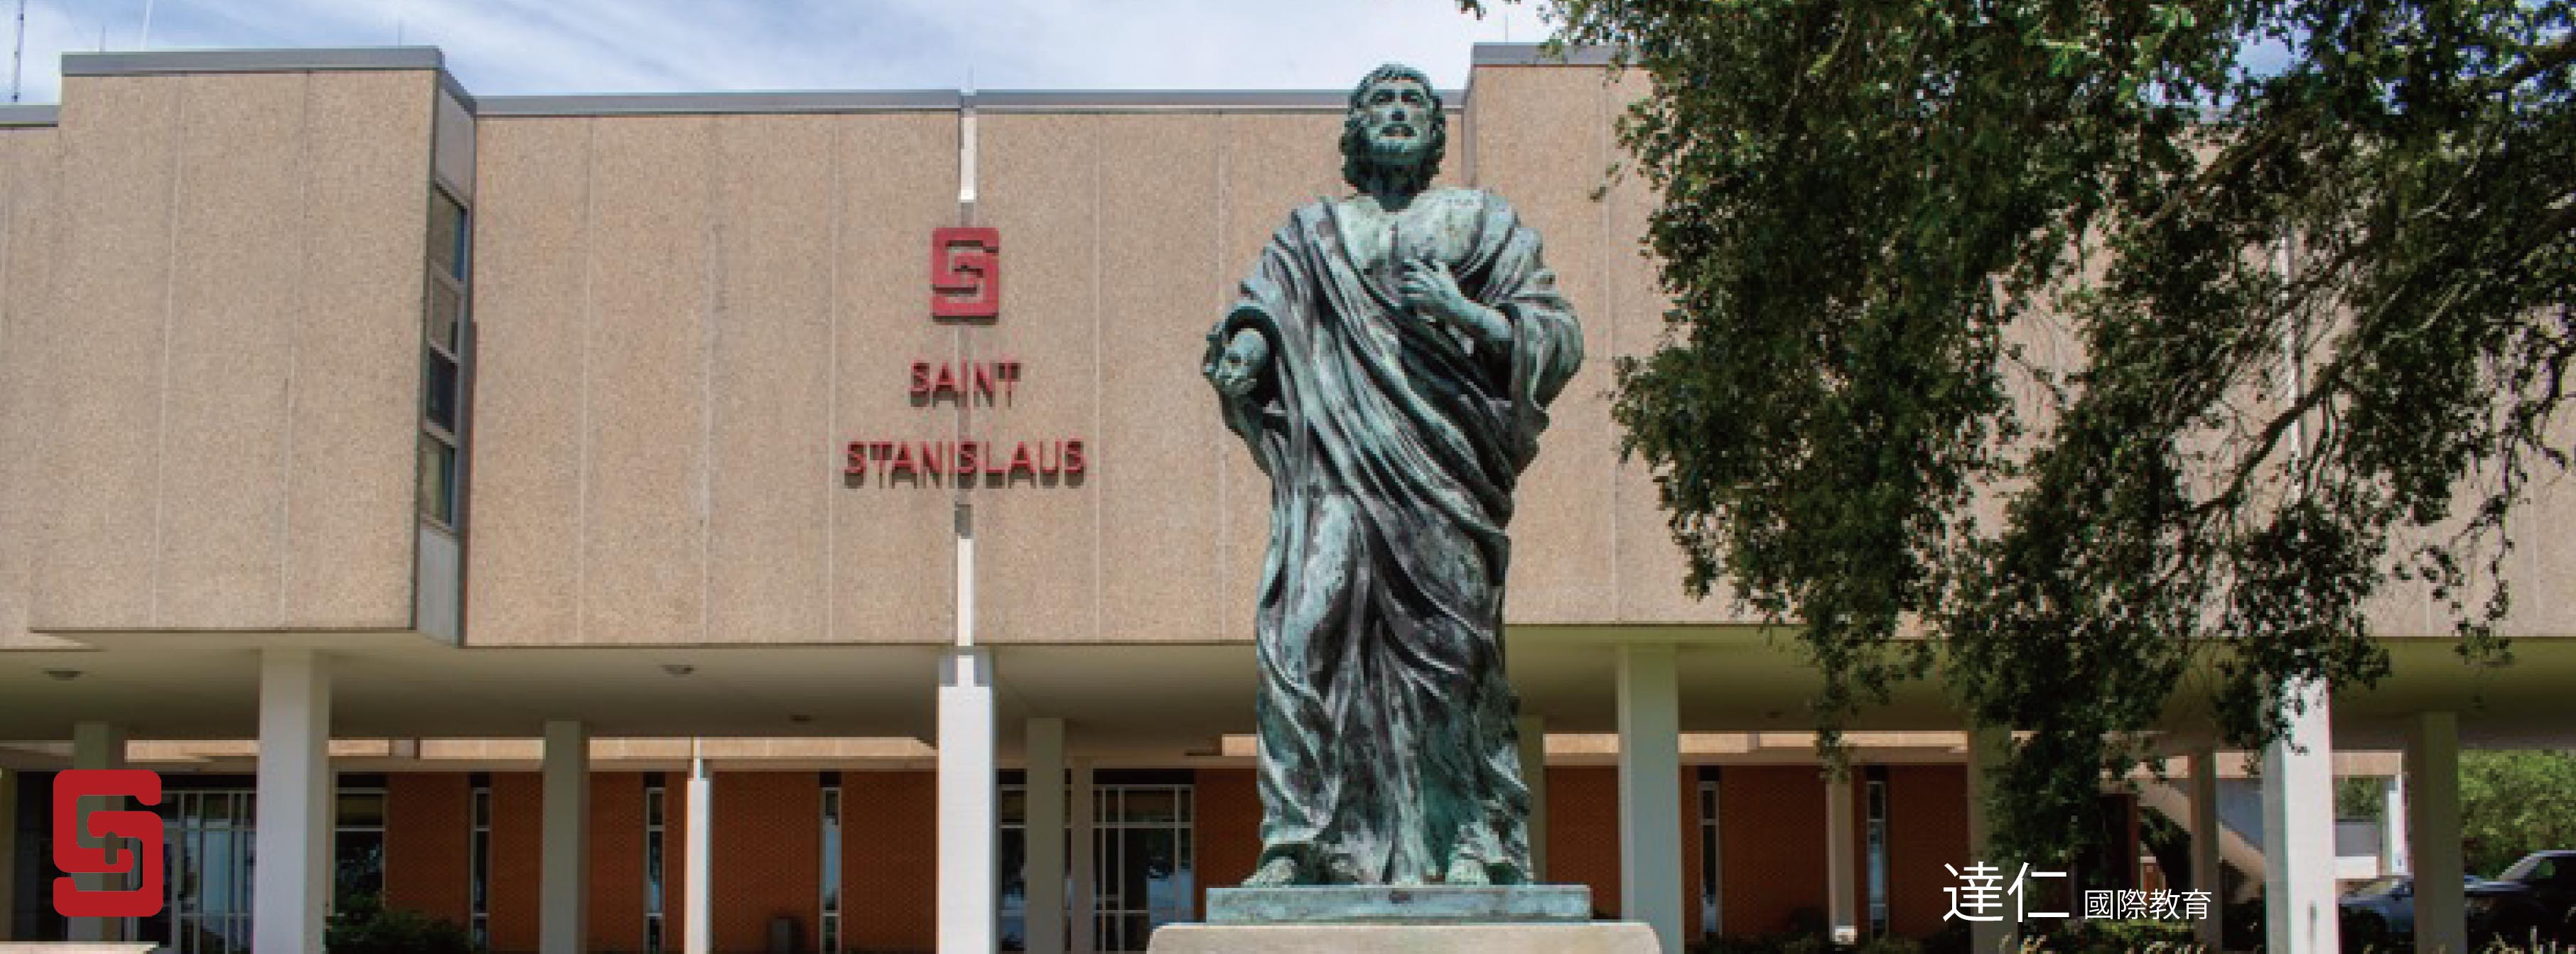 聖斯坦尼斯洛斯中學 Saint Stanislaus High School